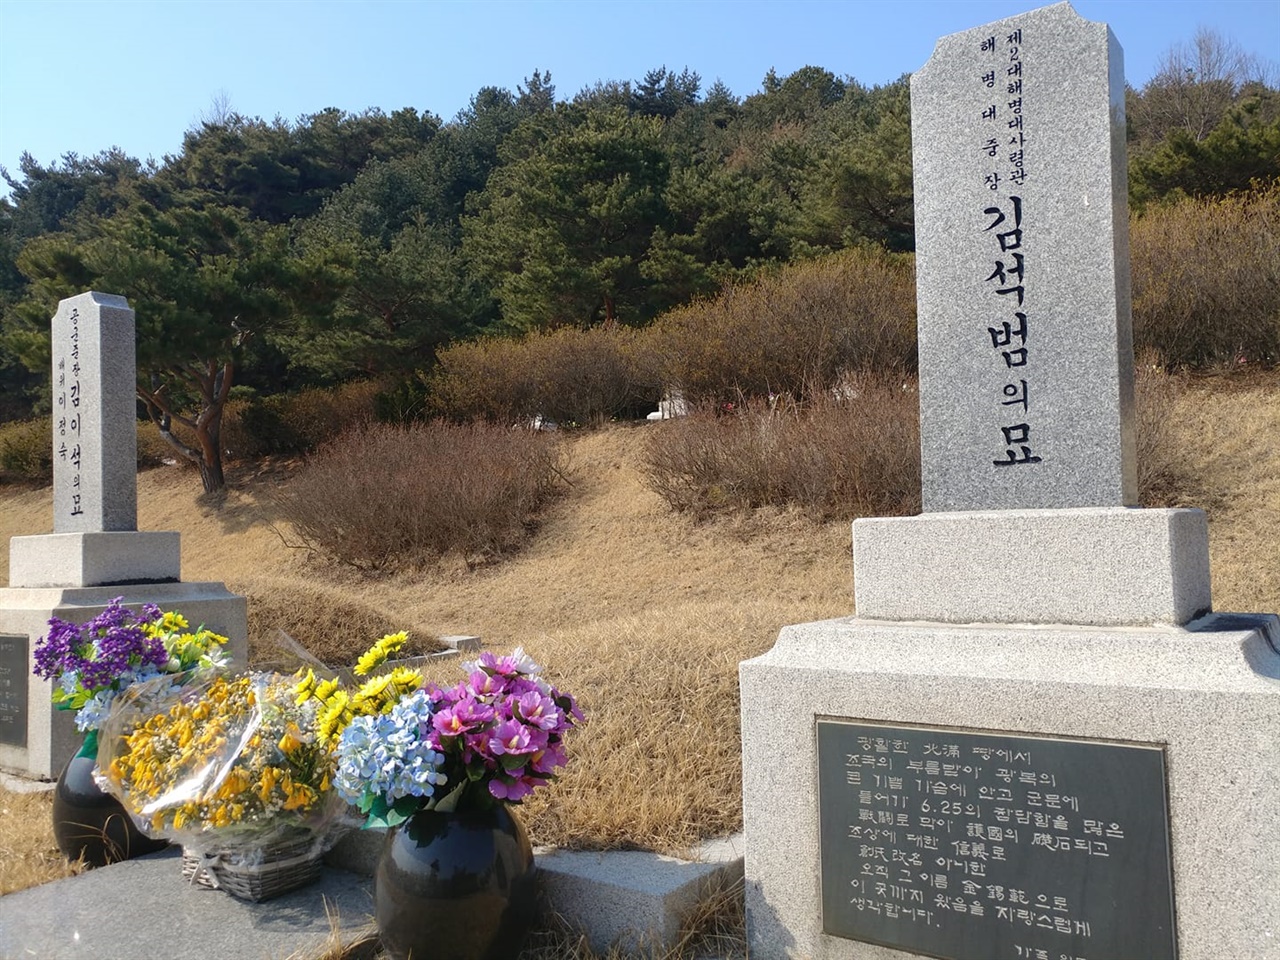 국립대전현충원 장군1묘역에 잠든 김석범의 묘. 그는 간도특설대 출신 친일반민족행위자다.